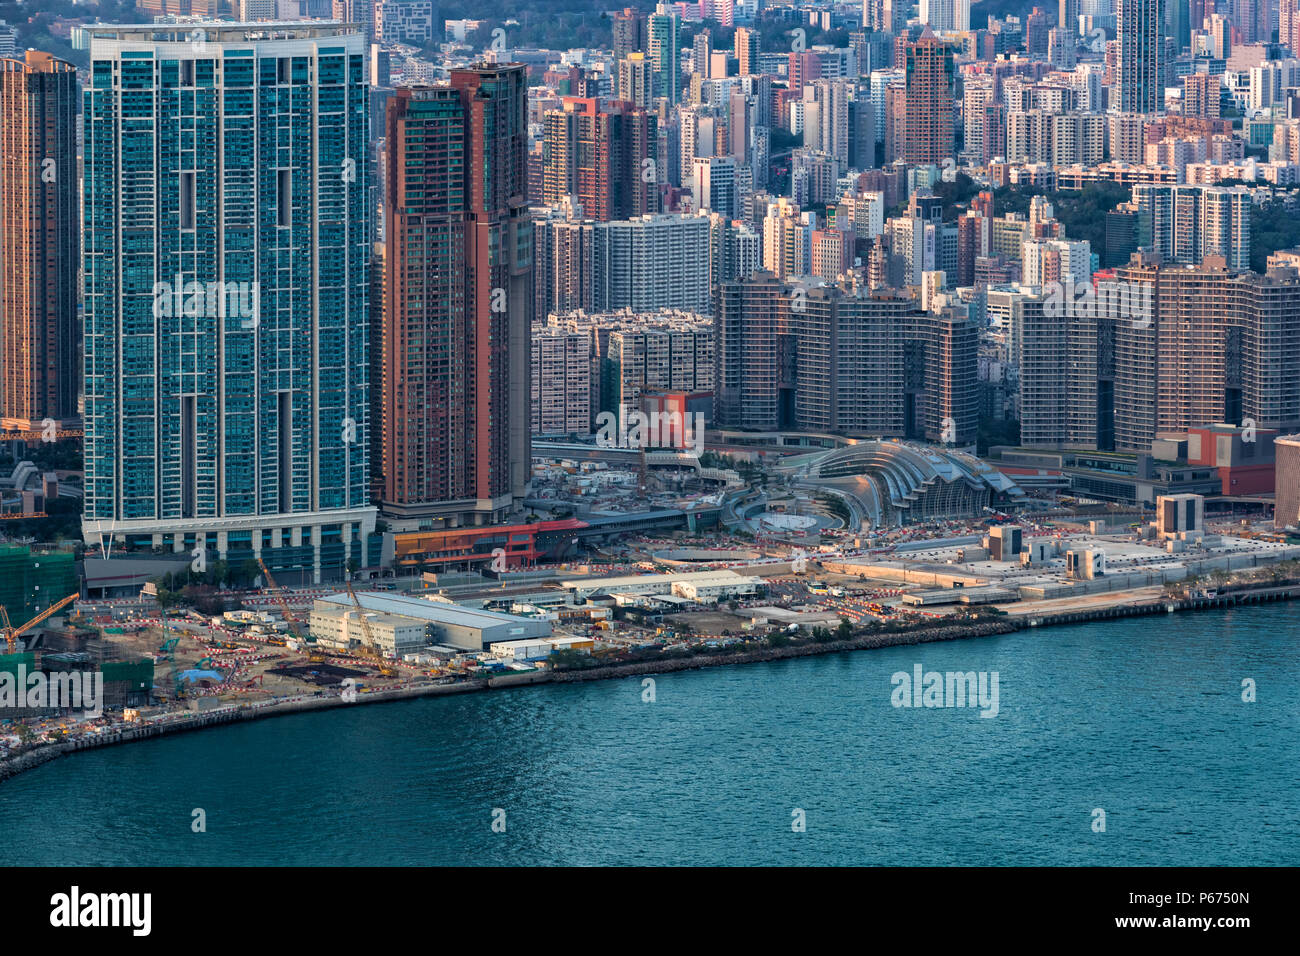 West Kowloon, Hong Kong - 05 Avril 2018 : Vue aérienne du site de construction de la gare de West Kowloon Hong Kong Banque D'Images